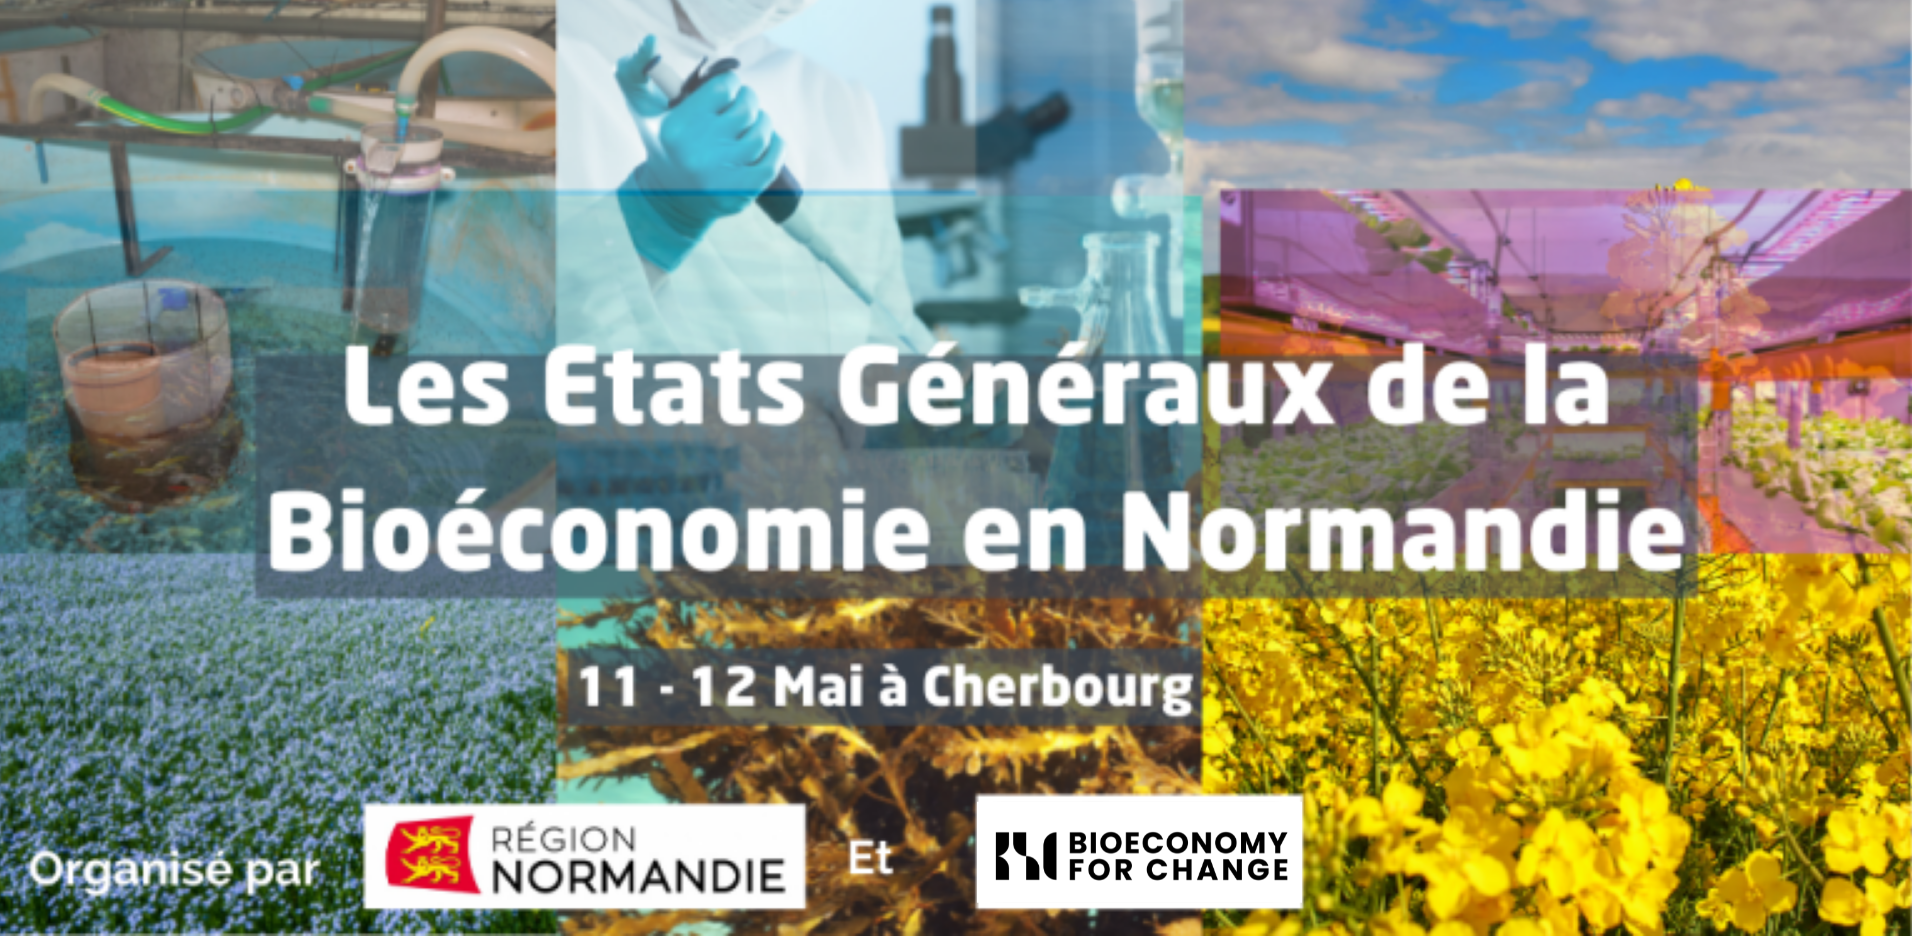 Participez aux Etats Généraux de la Bioéconomie en Normandie !